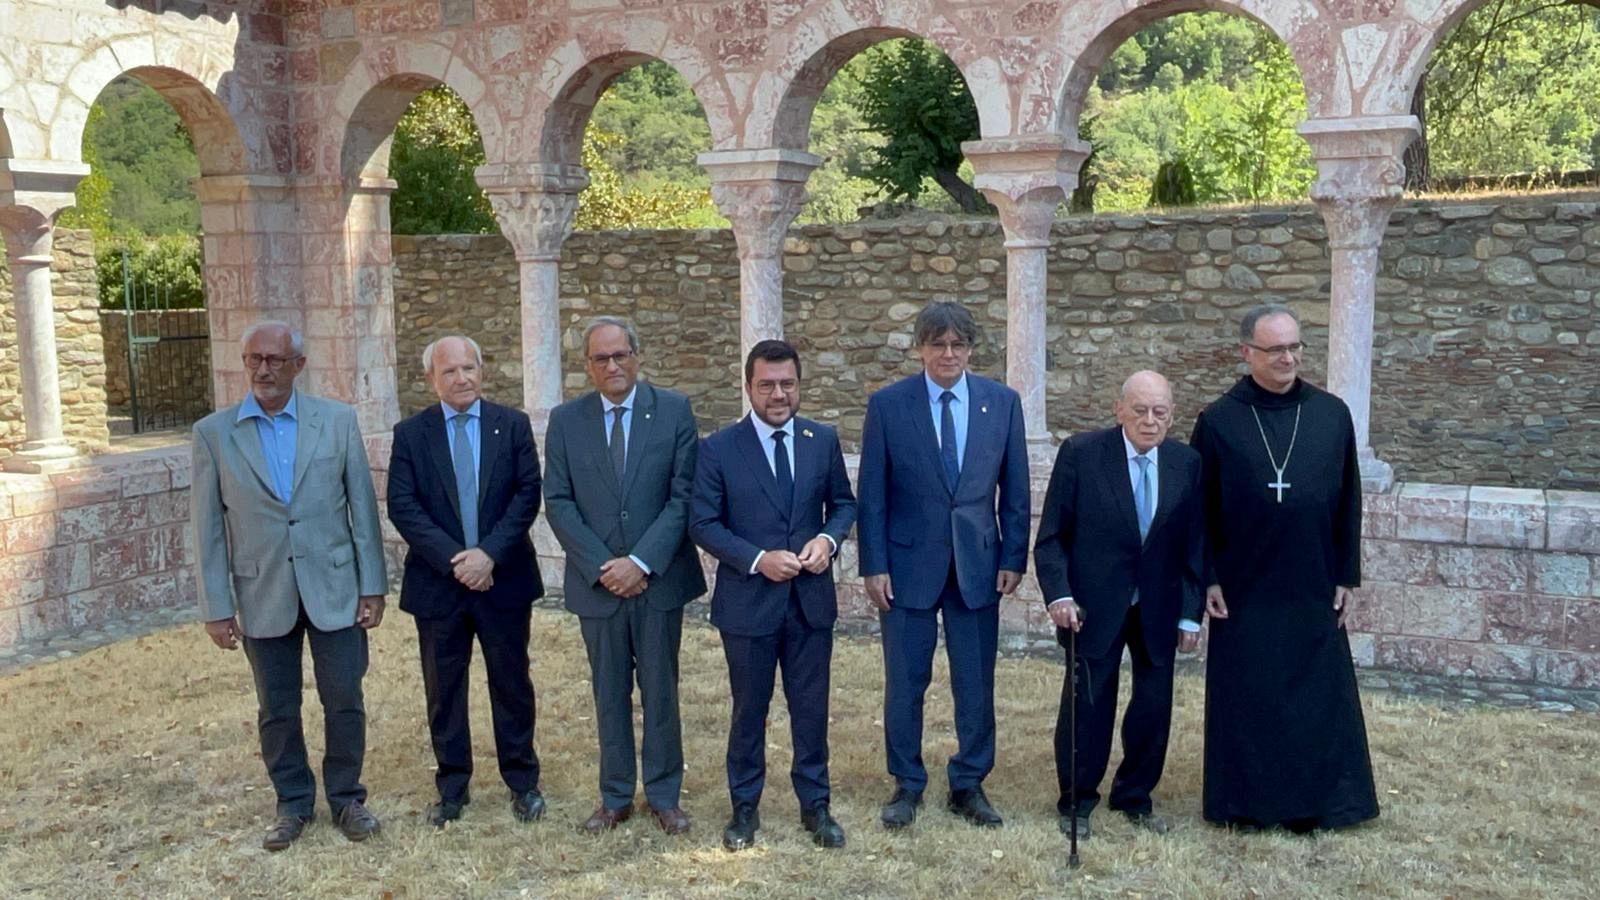 La Universitat Catalana d'Estiu reuneix els presidents Aragonès, Puigdemont, Pujol, Montilla i Torra